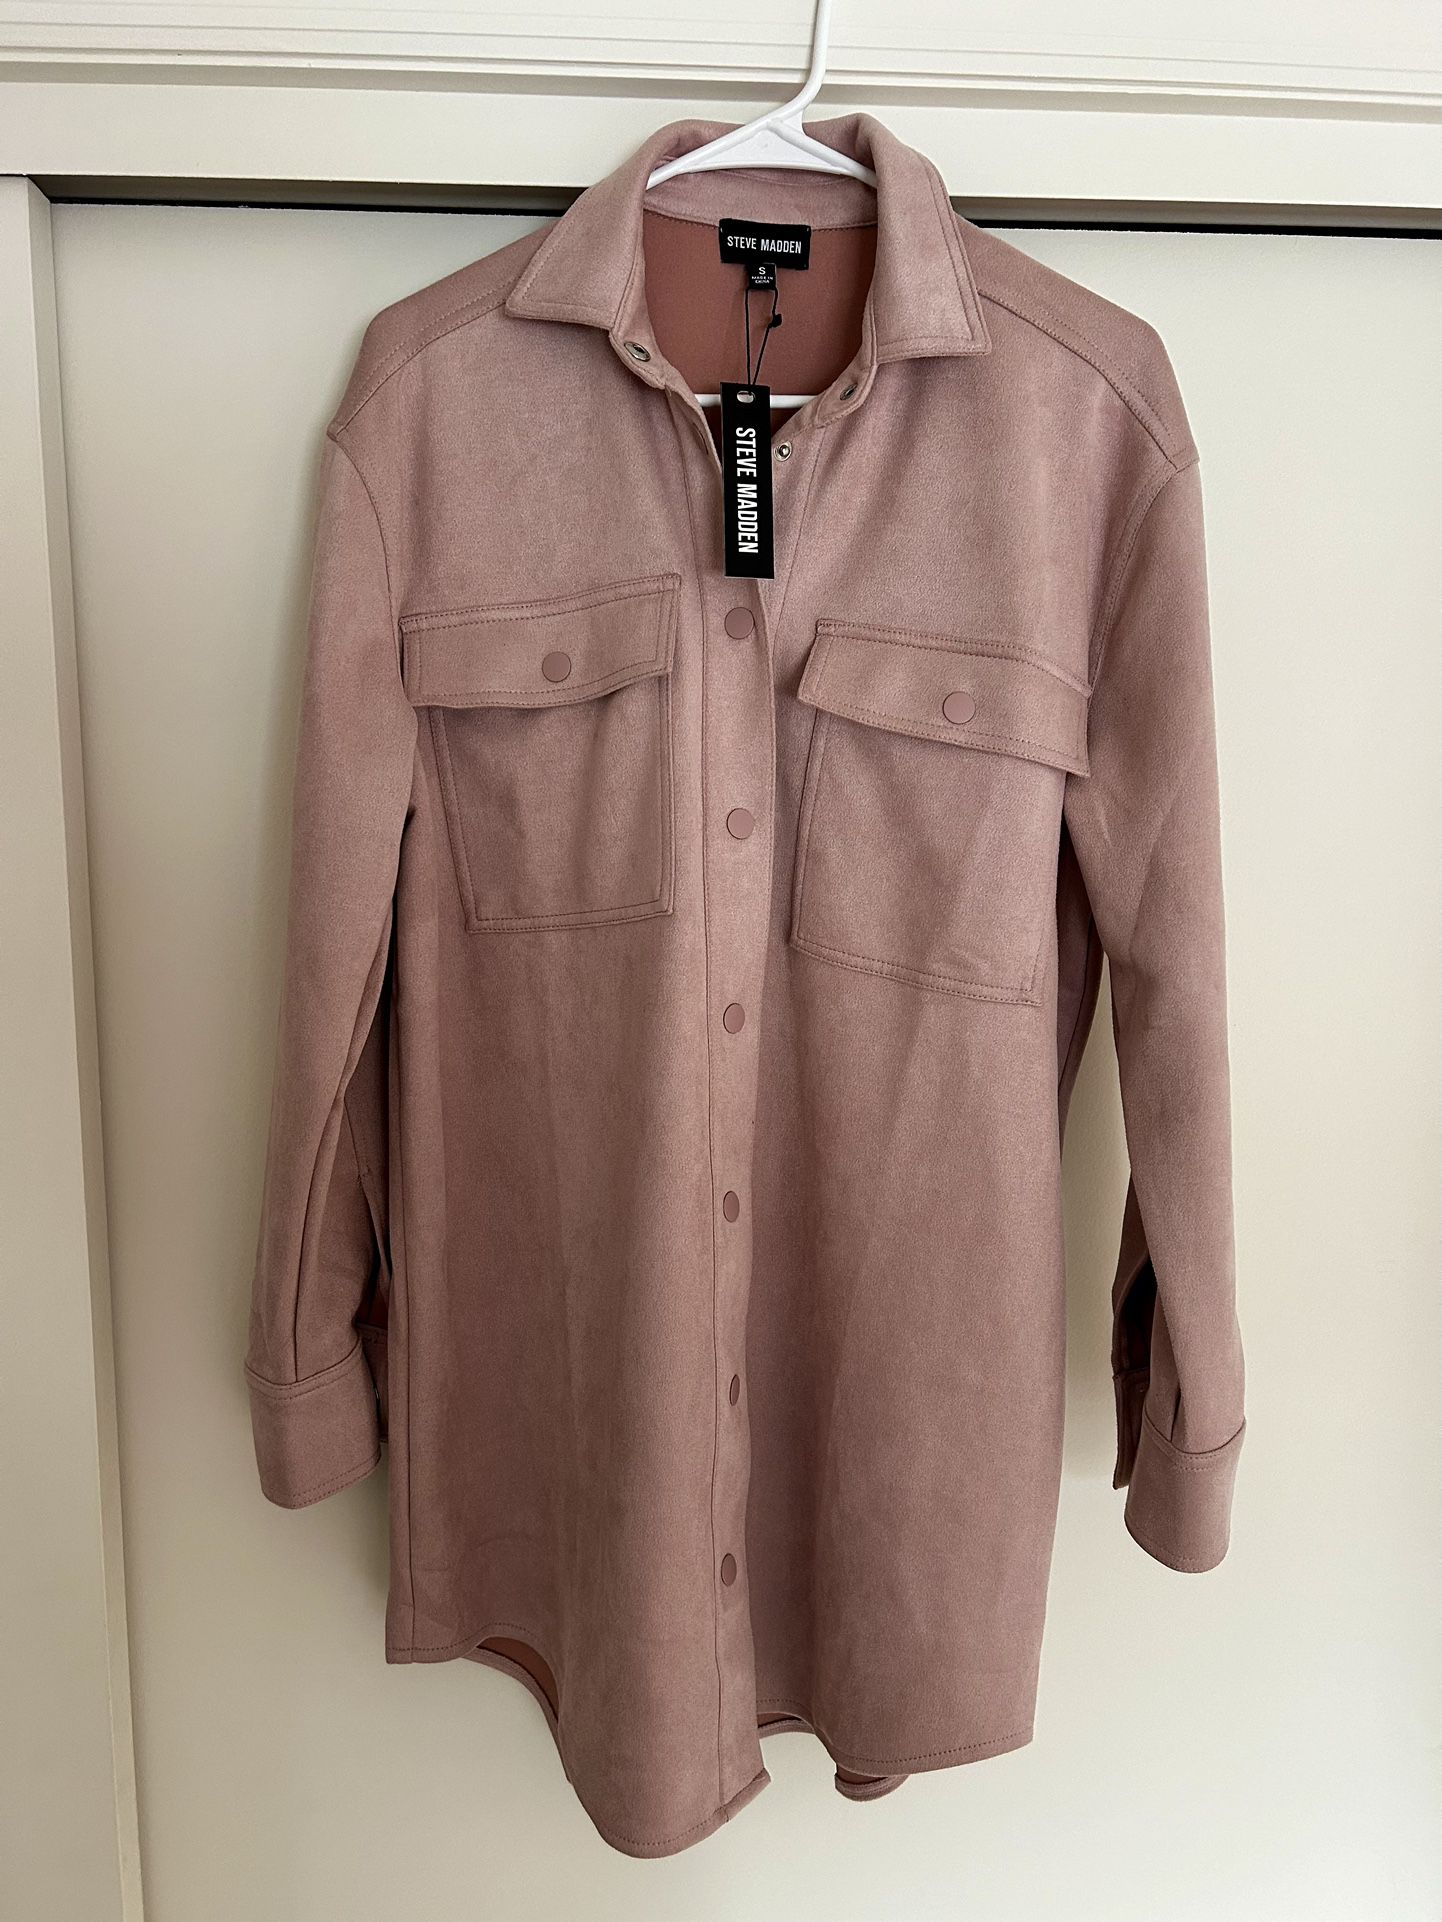 Steve Madden Women Suede Long Button Up Front Pockets Shirtdress /Jacket Sz S $99